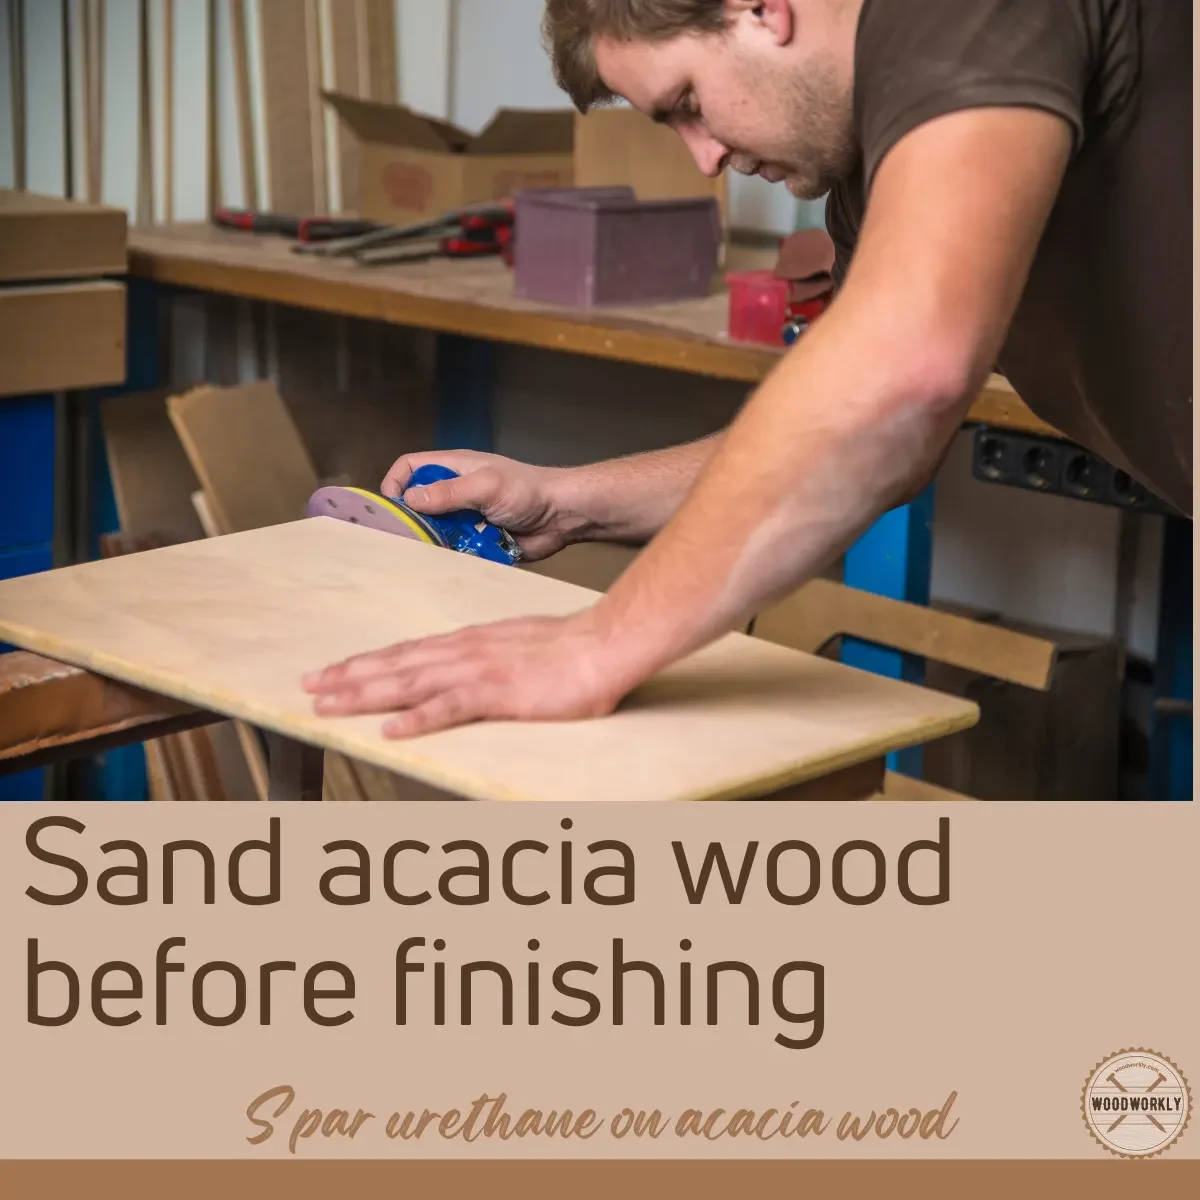 Sand acacia wood before finishing